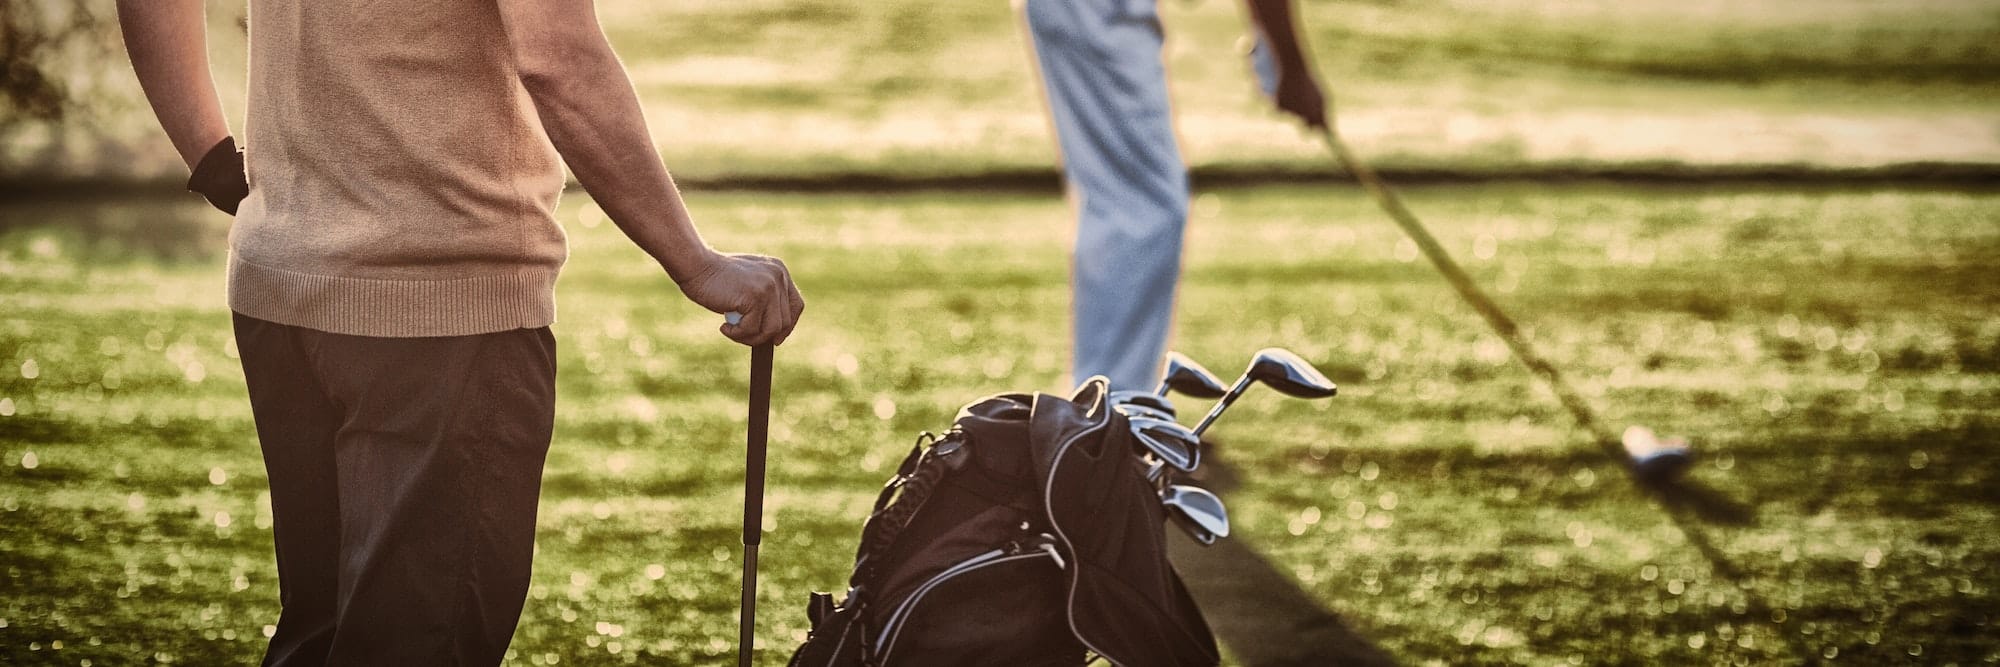 Golffitnesstraining für ältere Spieler